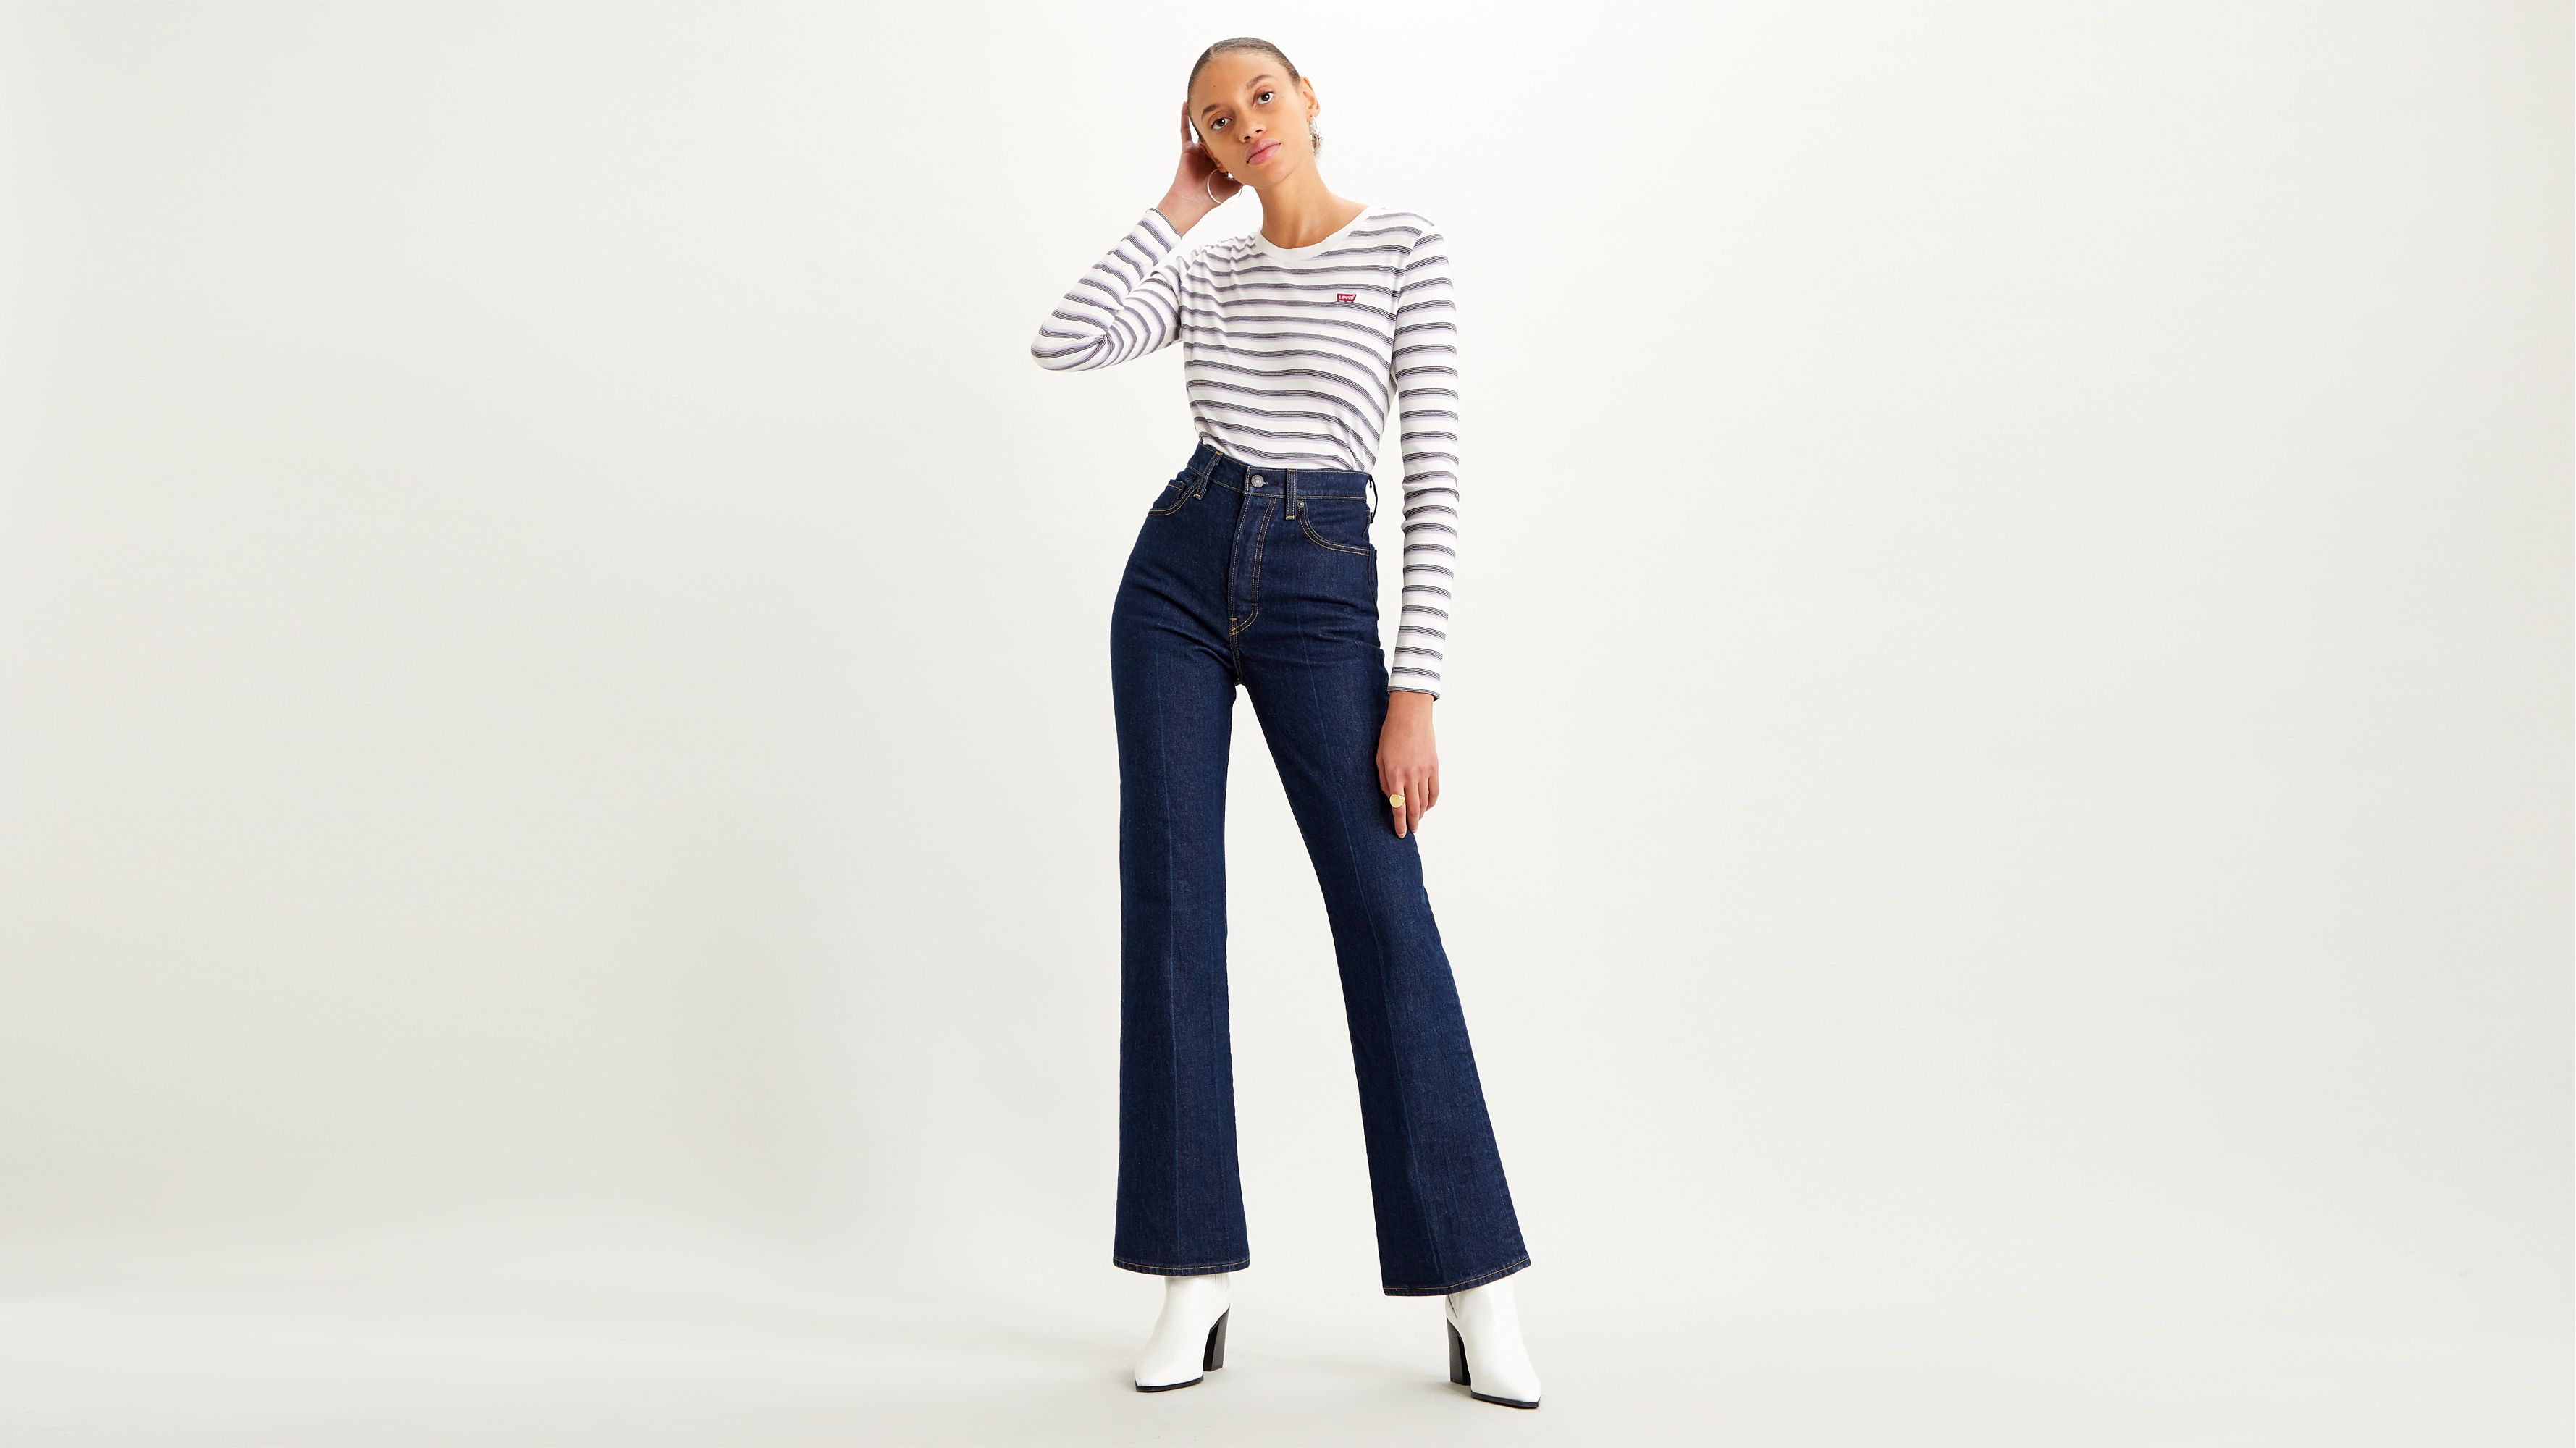 levi's women's jeans styles